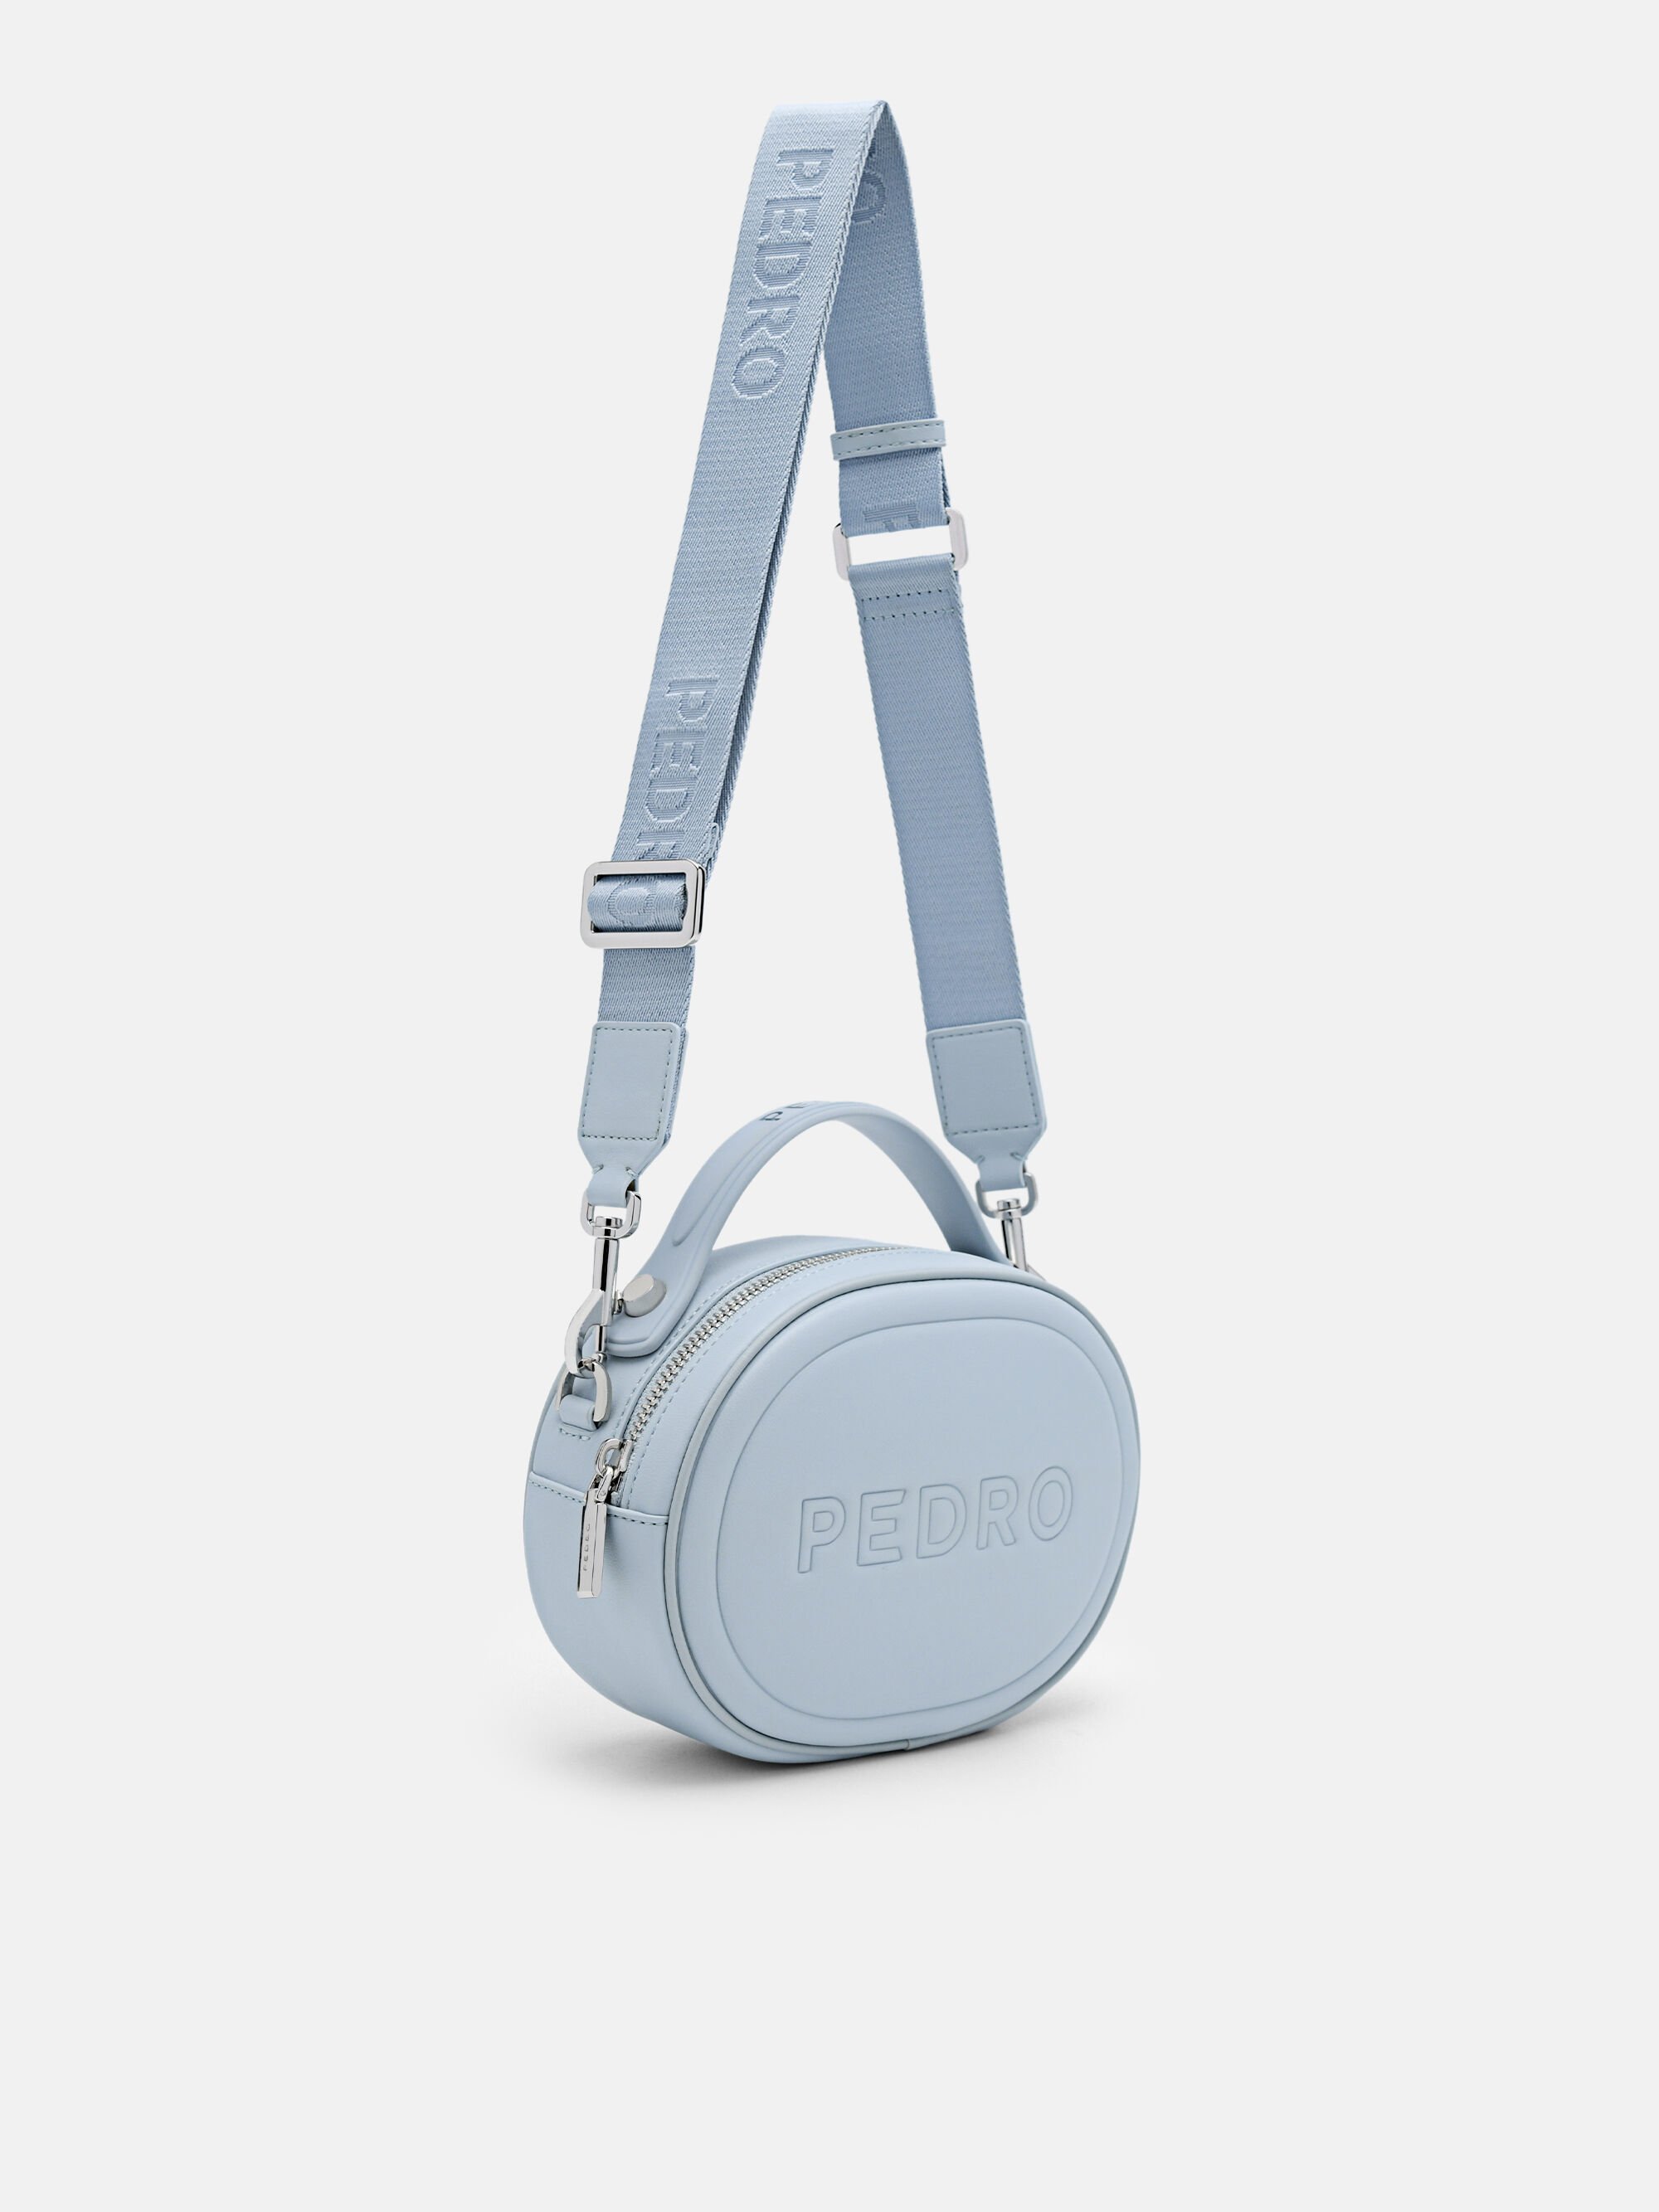 Trendy_Bee - New Arrival ‼️ PEDRO Canvas Camera Shoulder Bag